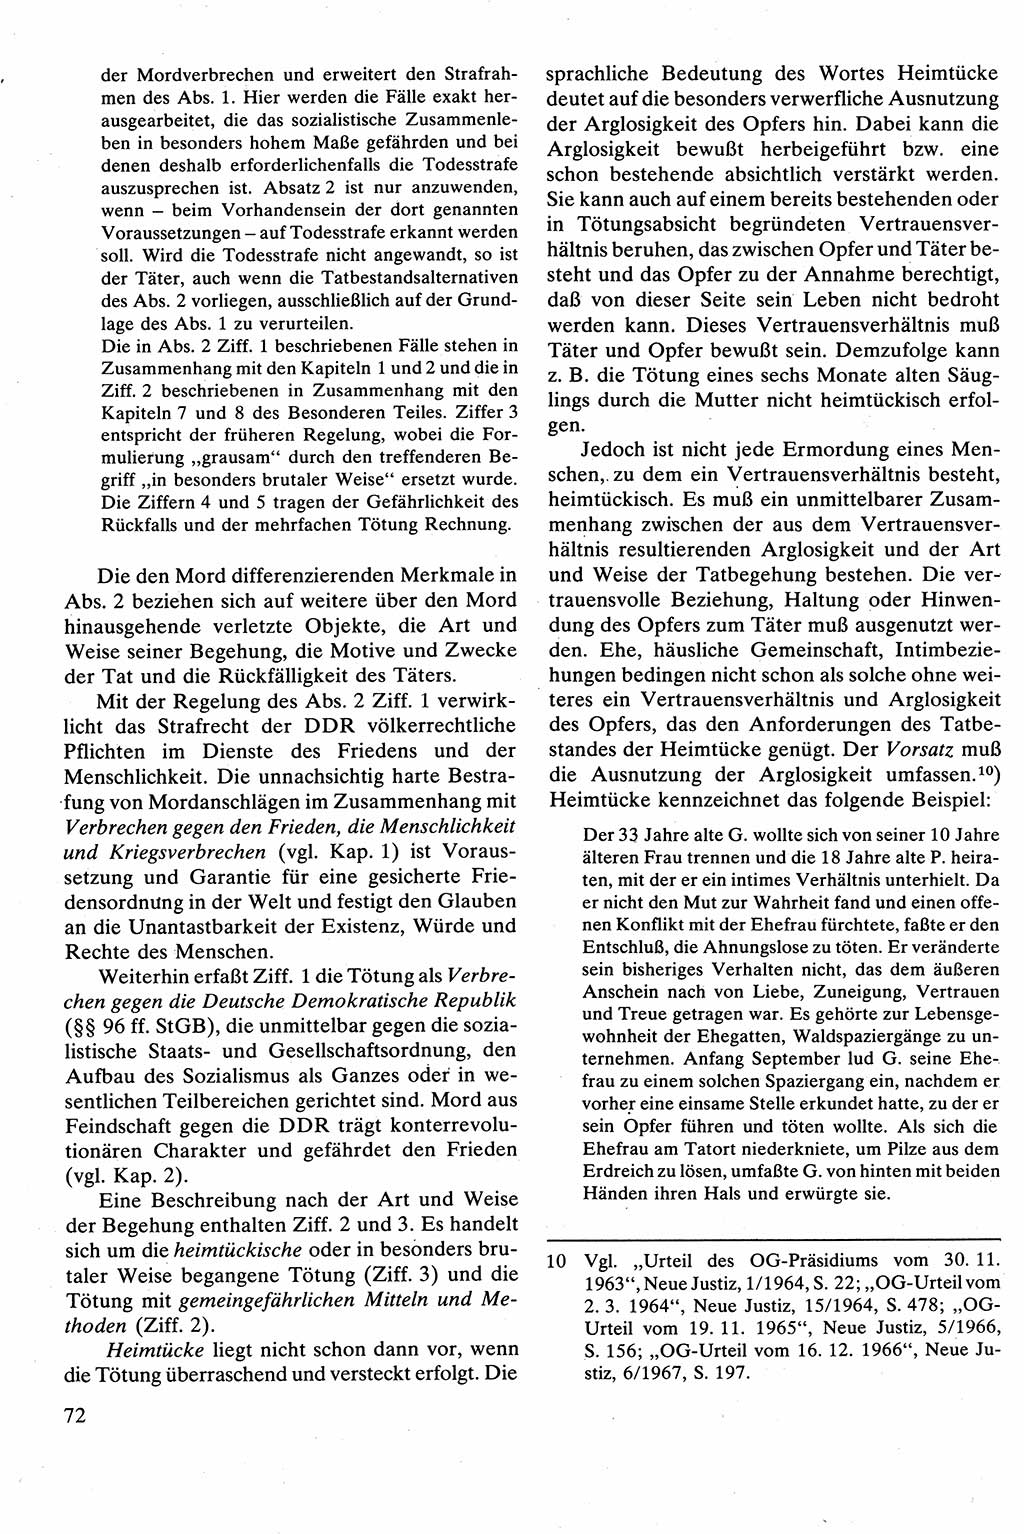 Strafrecht [Deutsche Demokratische Republik (DDR)], Besonderer Teil, Lehrbuch 1981, Seite 72 (Strafr. DDR BT Lb. 1981, S. 72)